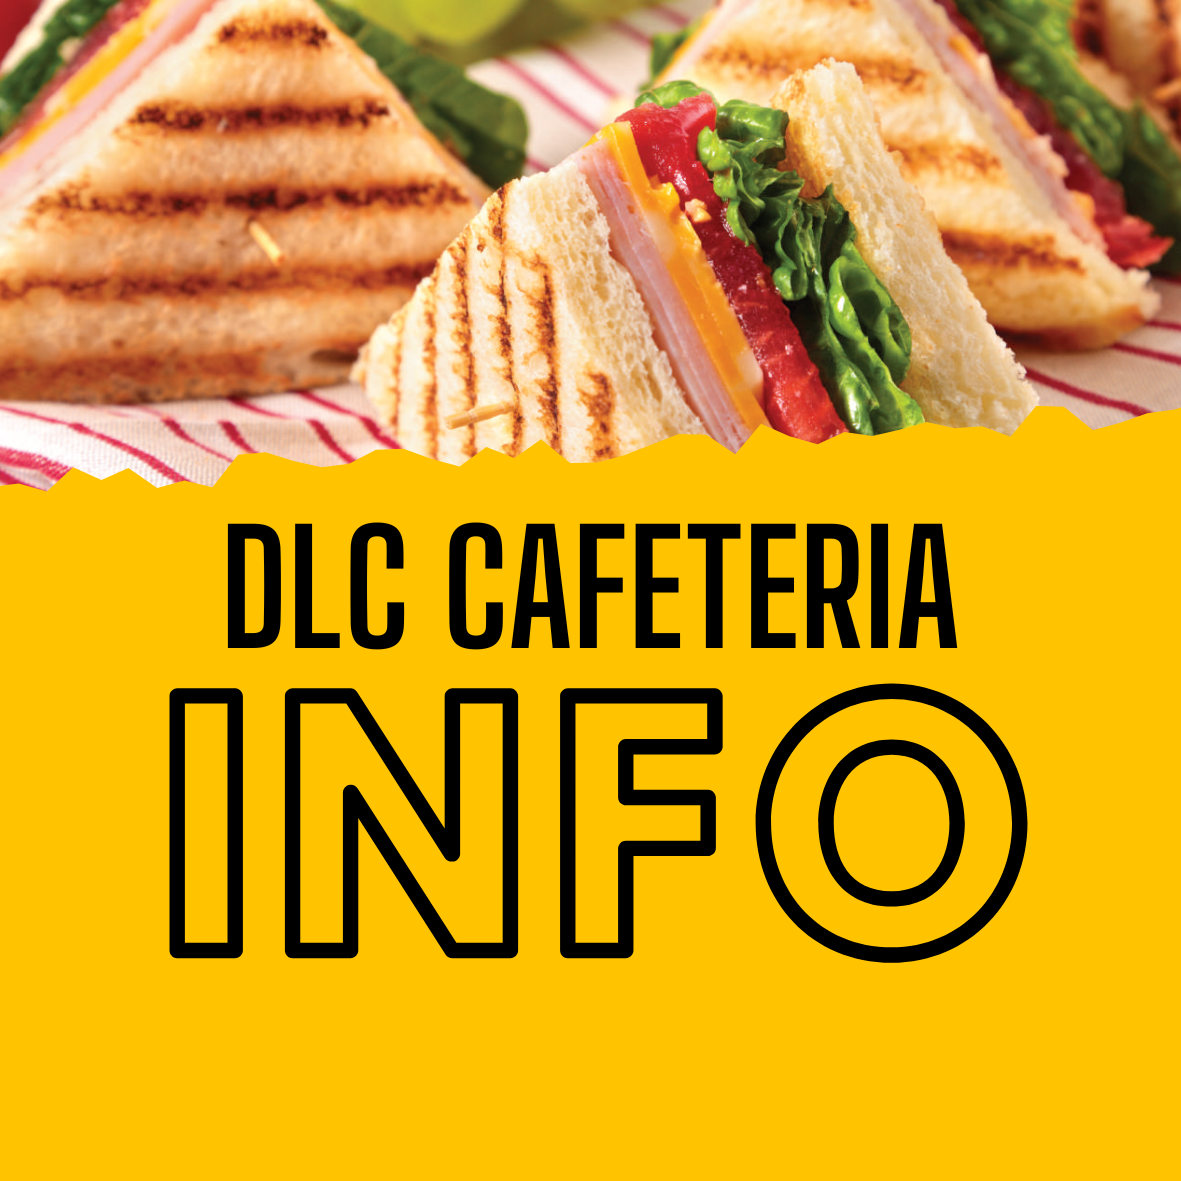 DLC Cafeteria Information